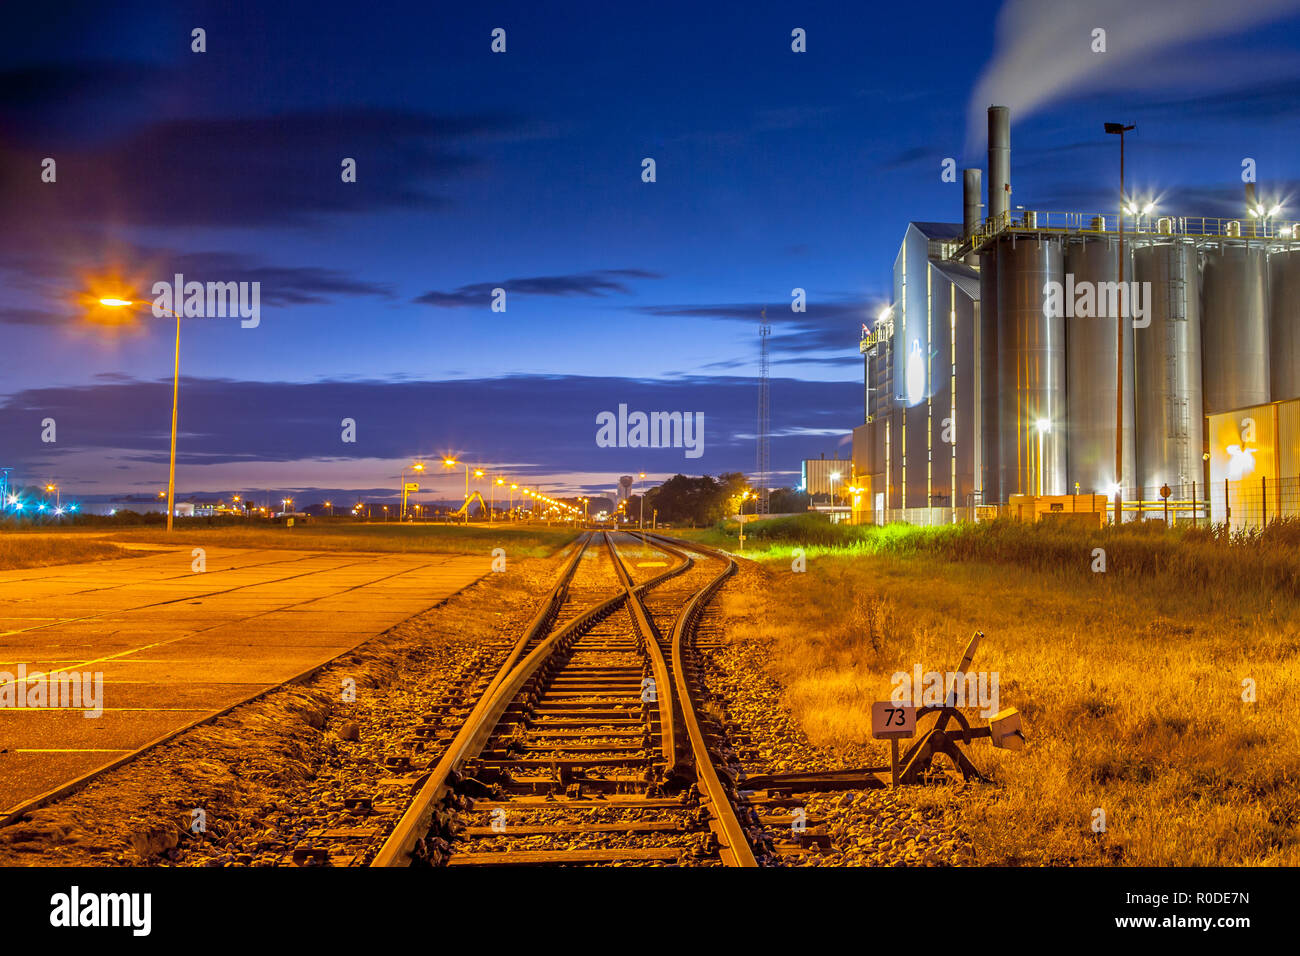 Railroad commutateur dans une zone industrielle avec des couleurs et lumières de rêve surréaliste au crépuscule Banque D'Images